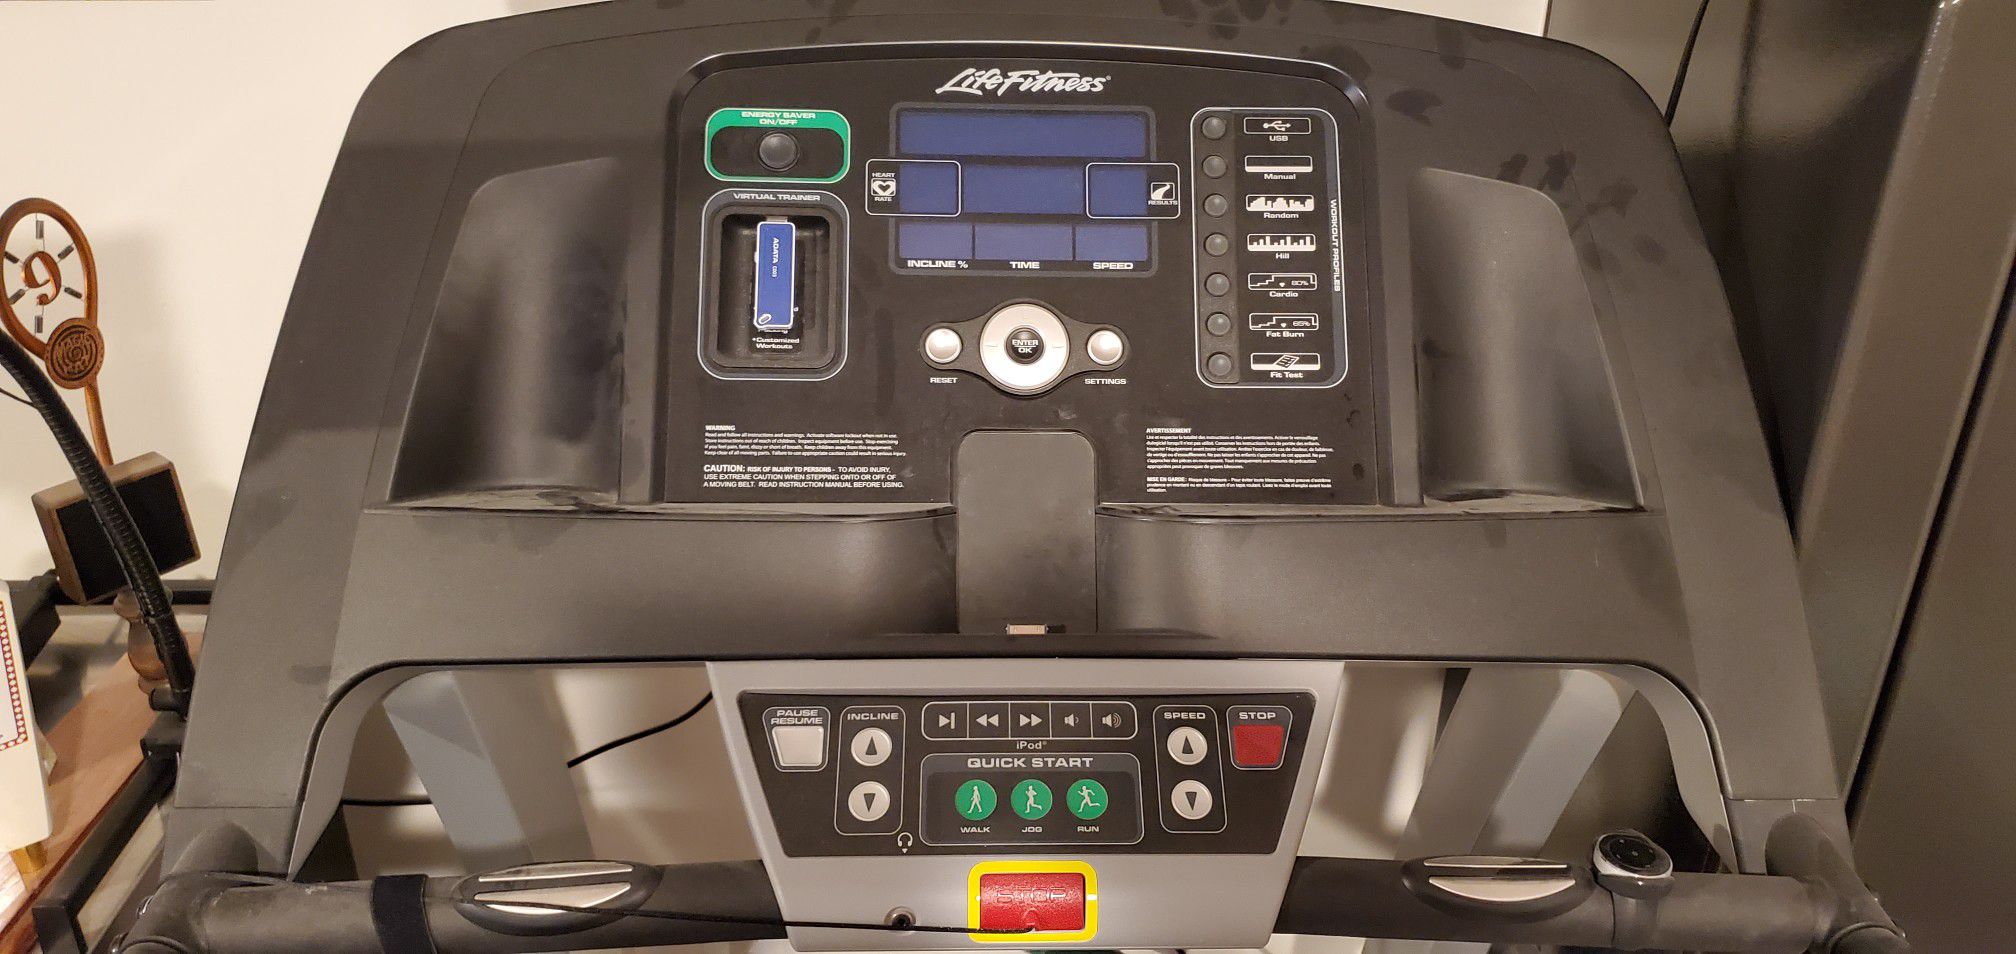 Life Fitness F1 smart treadmill